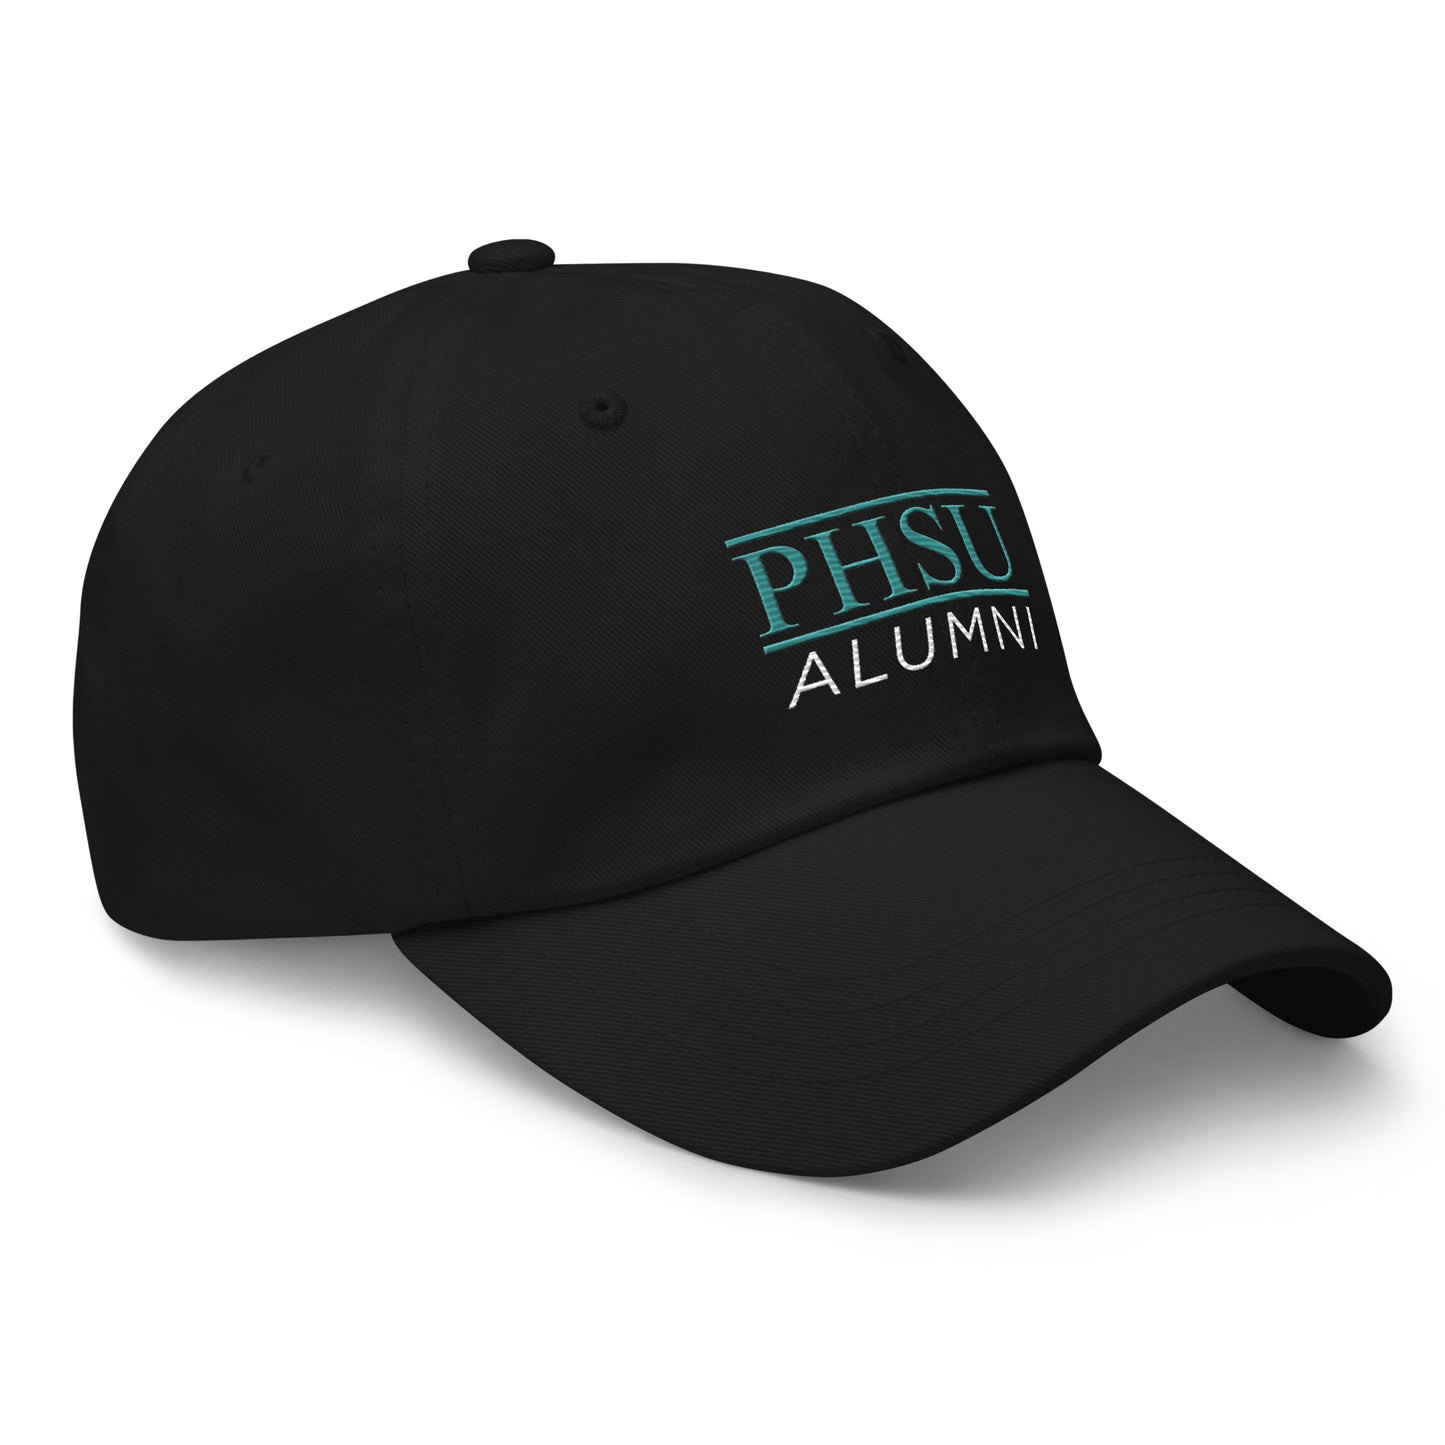 PHSU Alumni - Cap